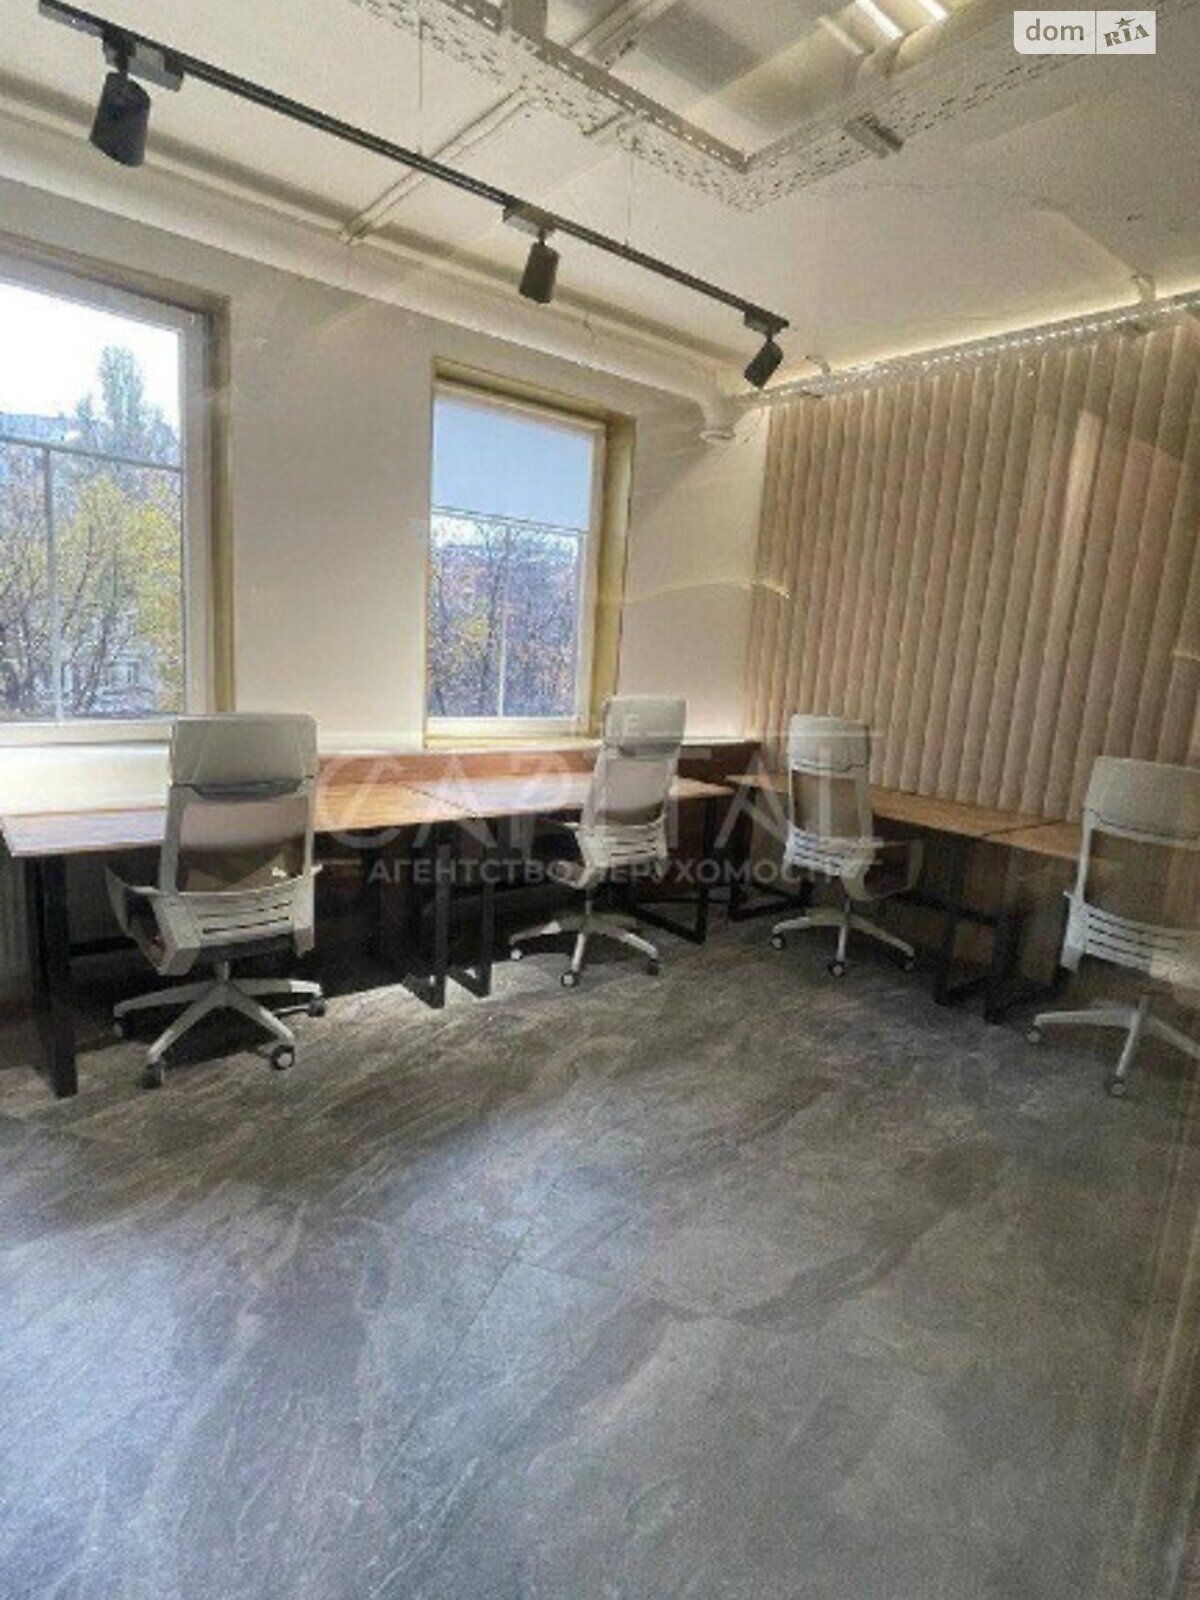 Офисное помещение на 170 кв.м. в Киеве фото 1